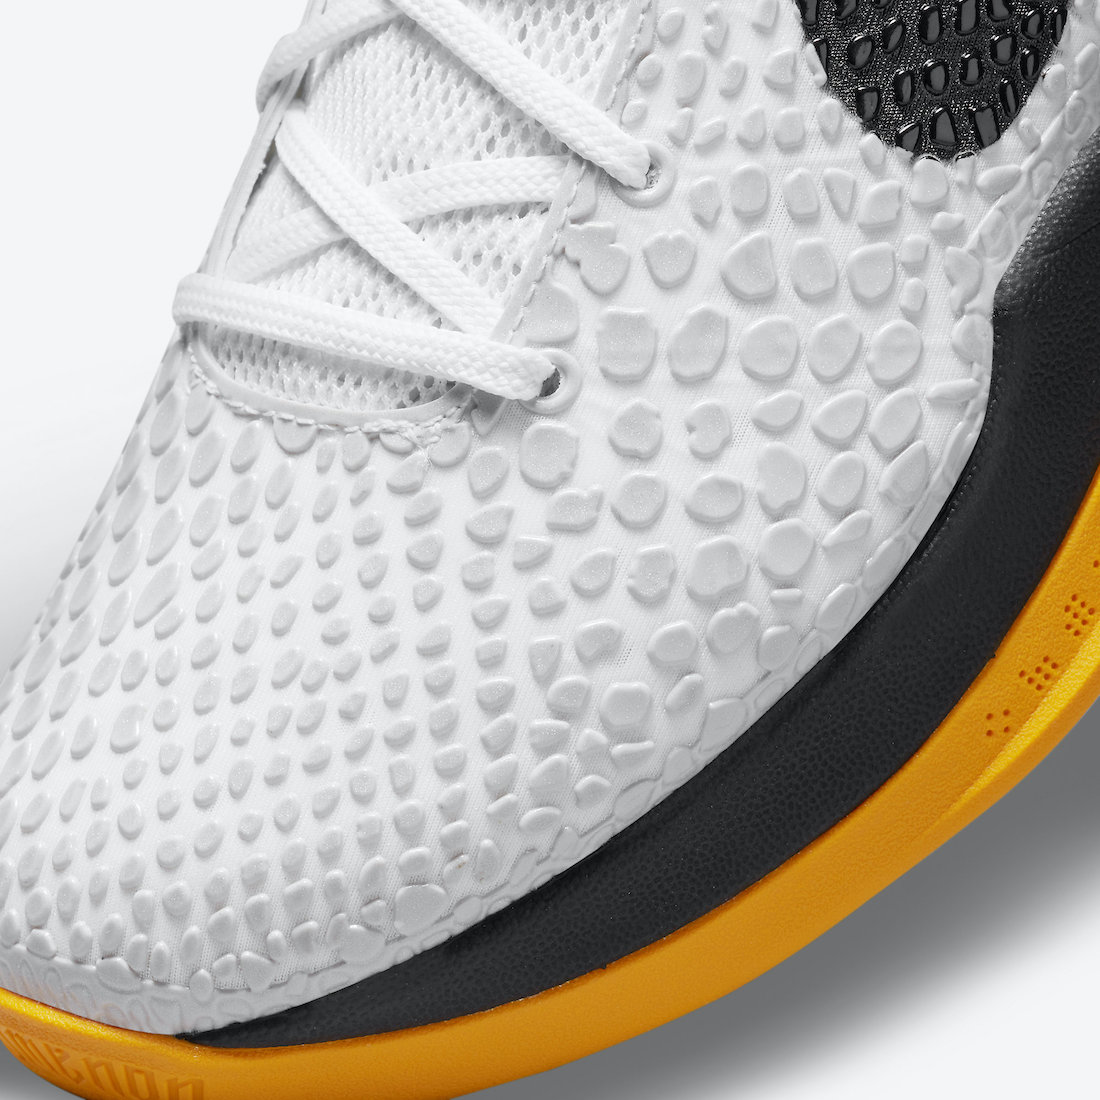 Nike Kobe 6 Protro POP White Del Sol CW2190-100 Release Date Price